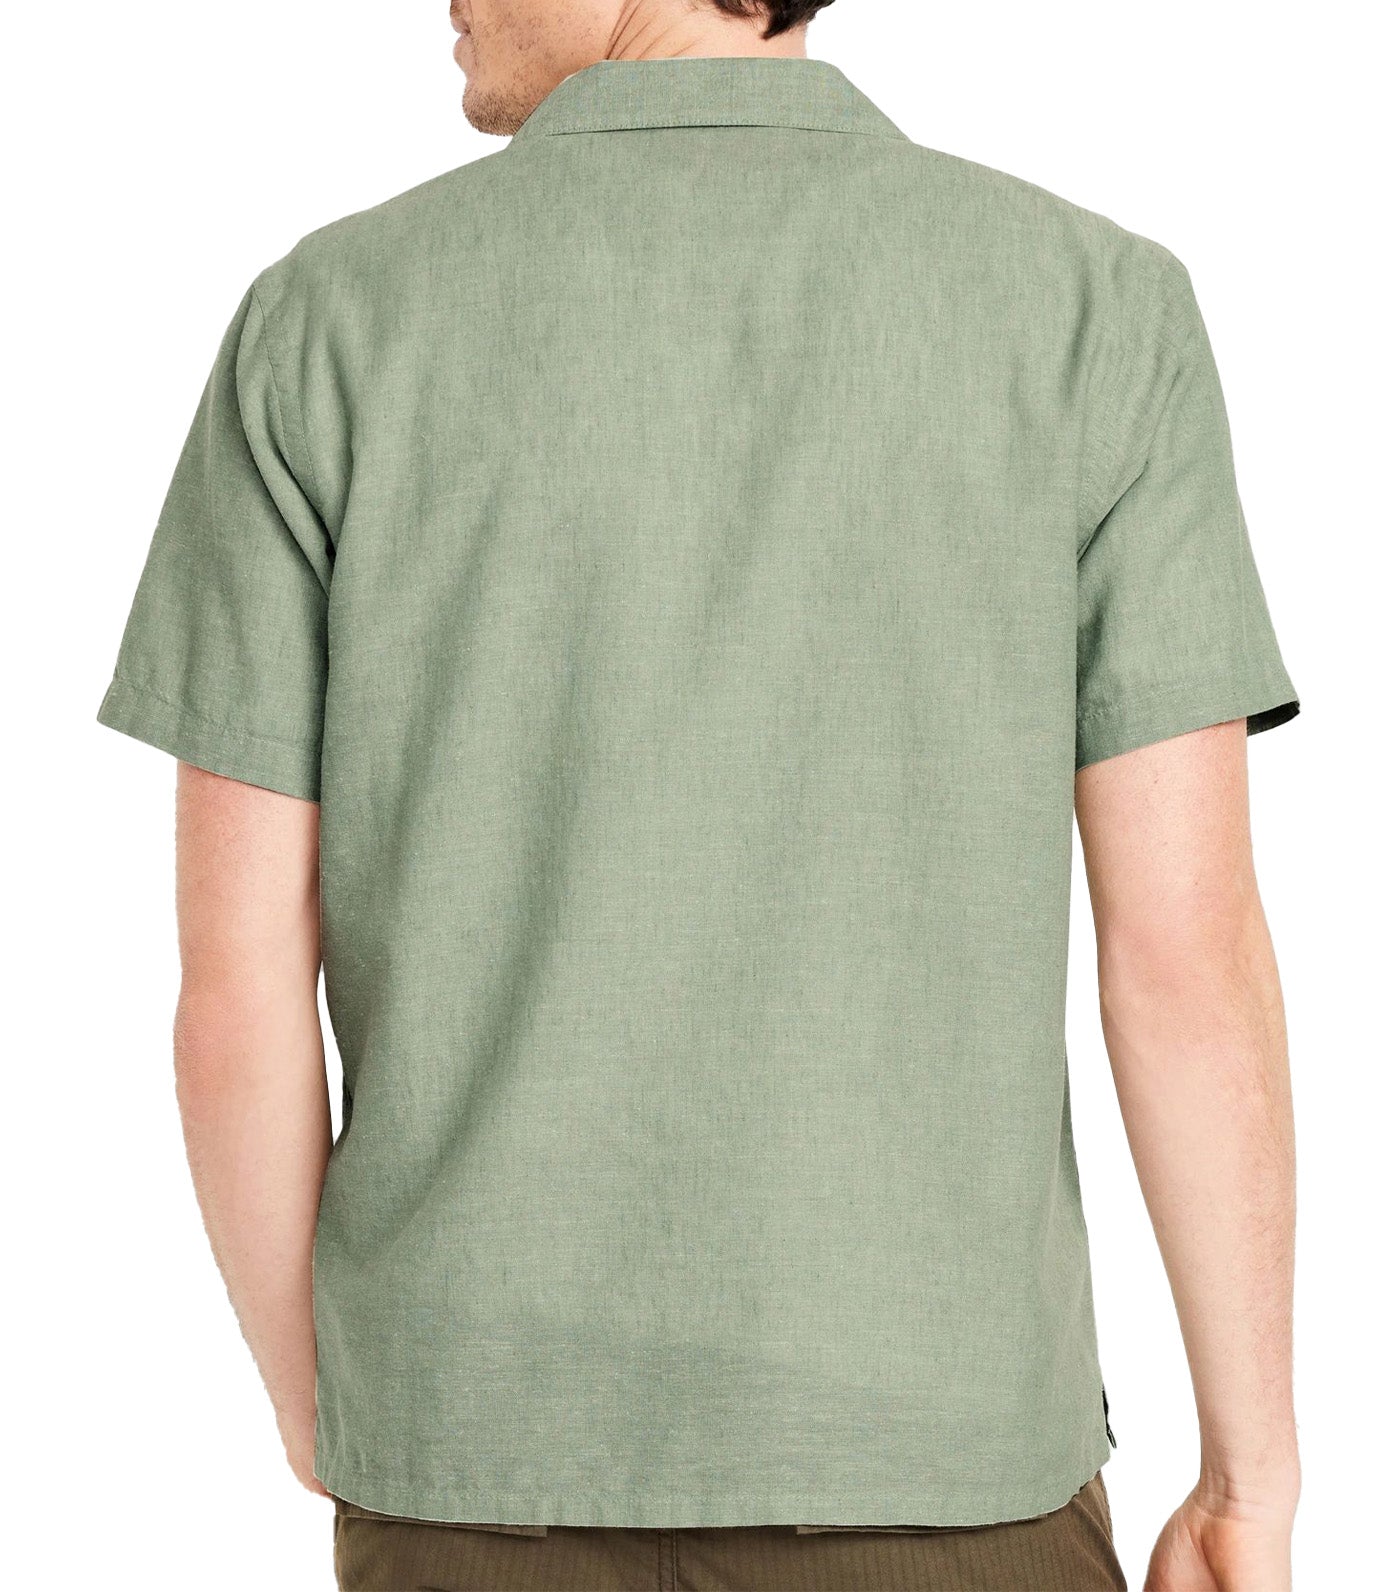 Short-Sleeve Printed Camp Shirt for Men Olive